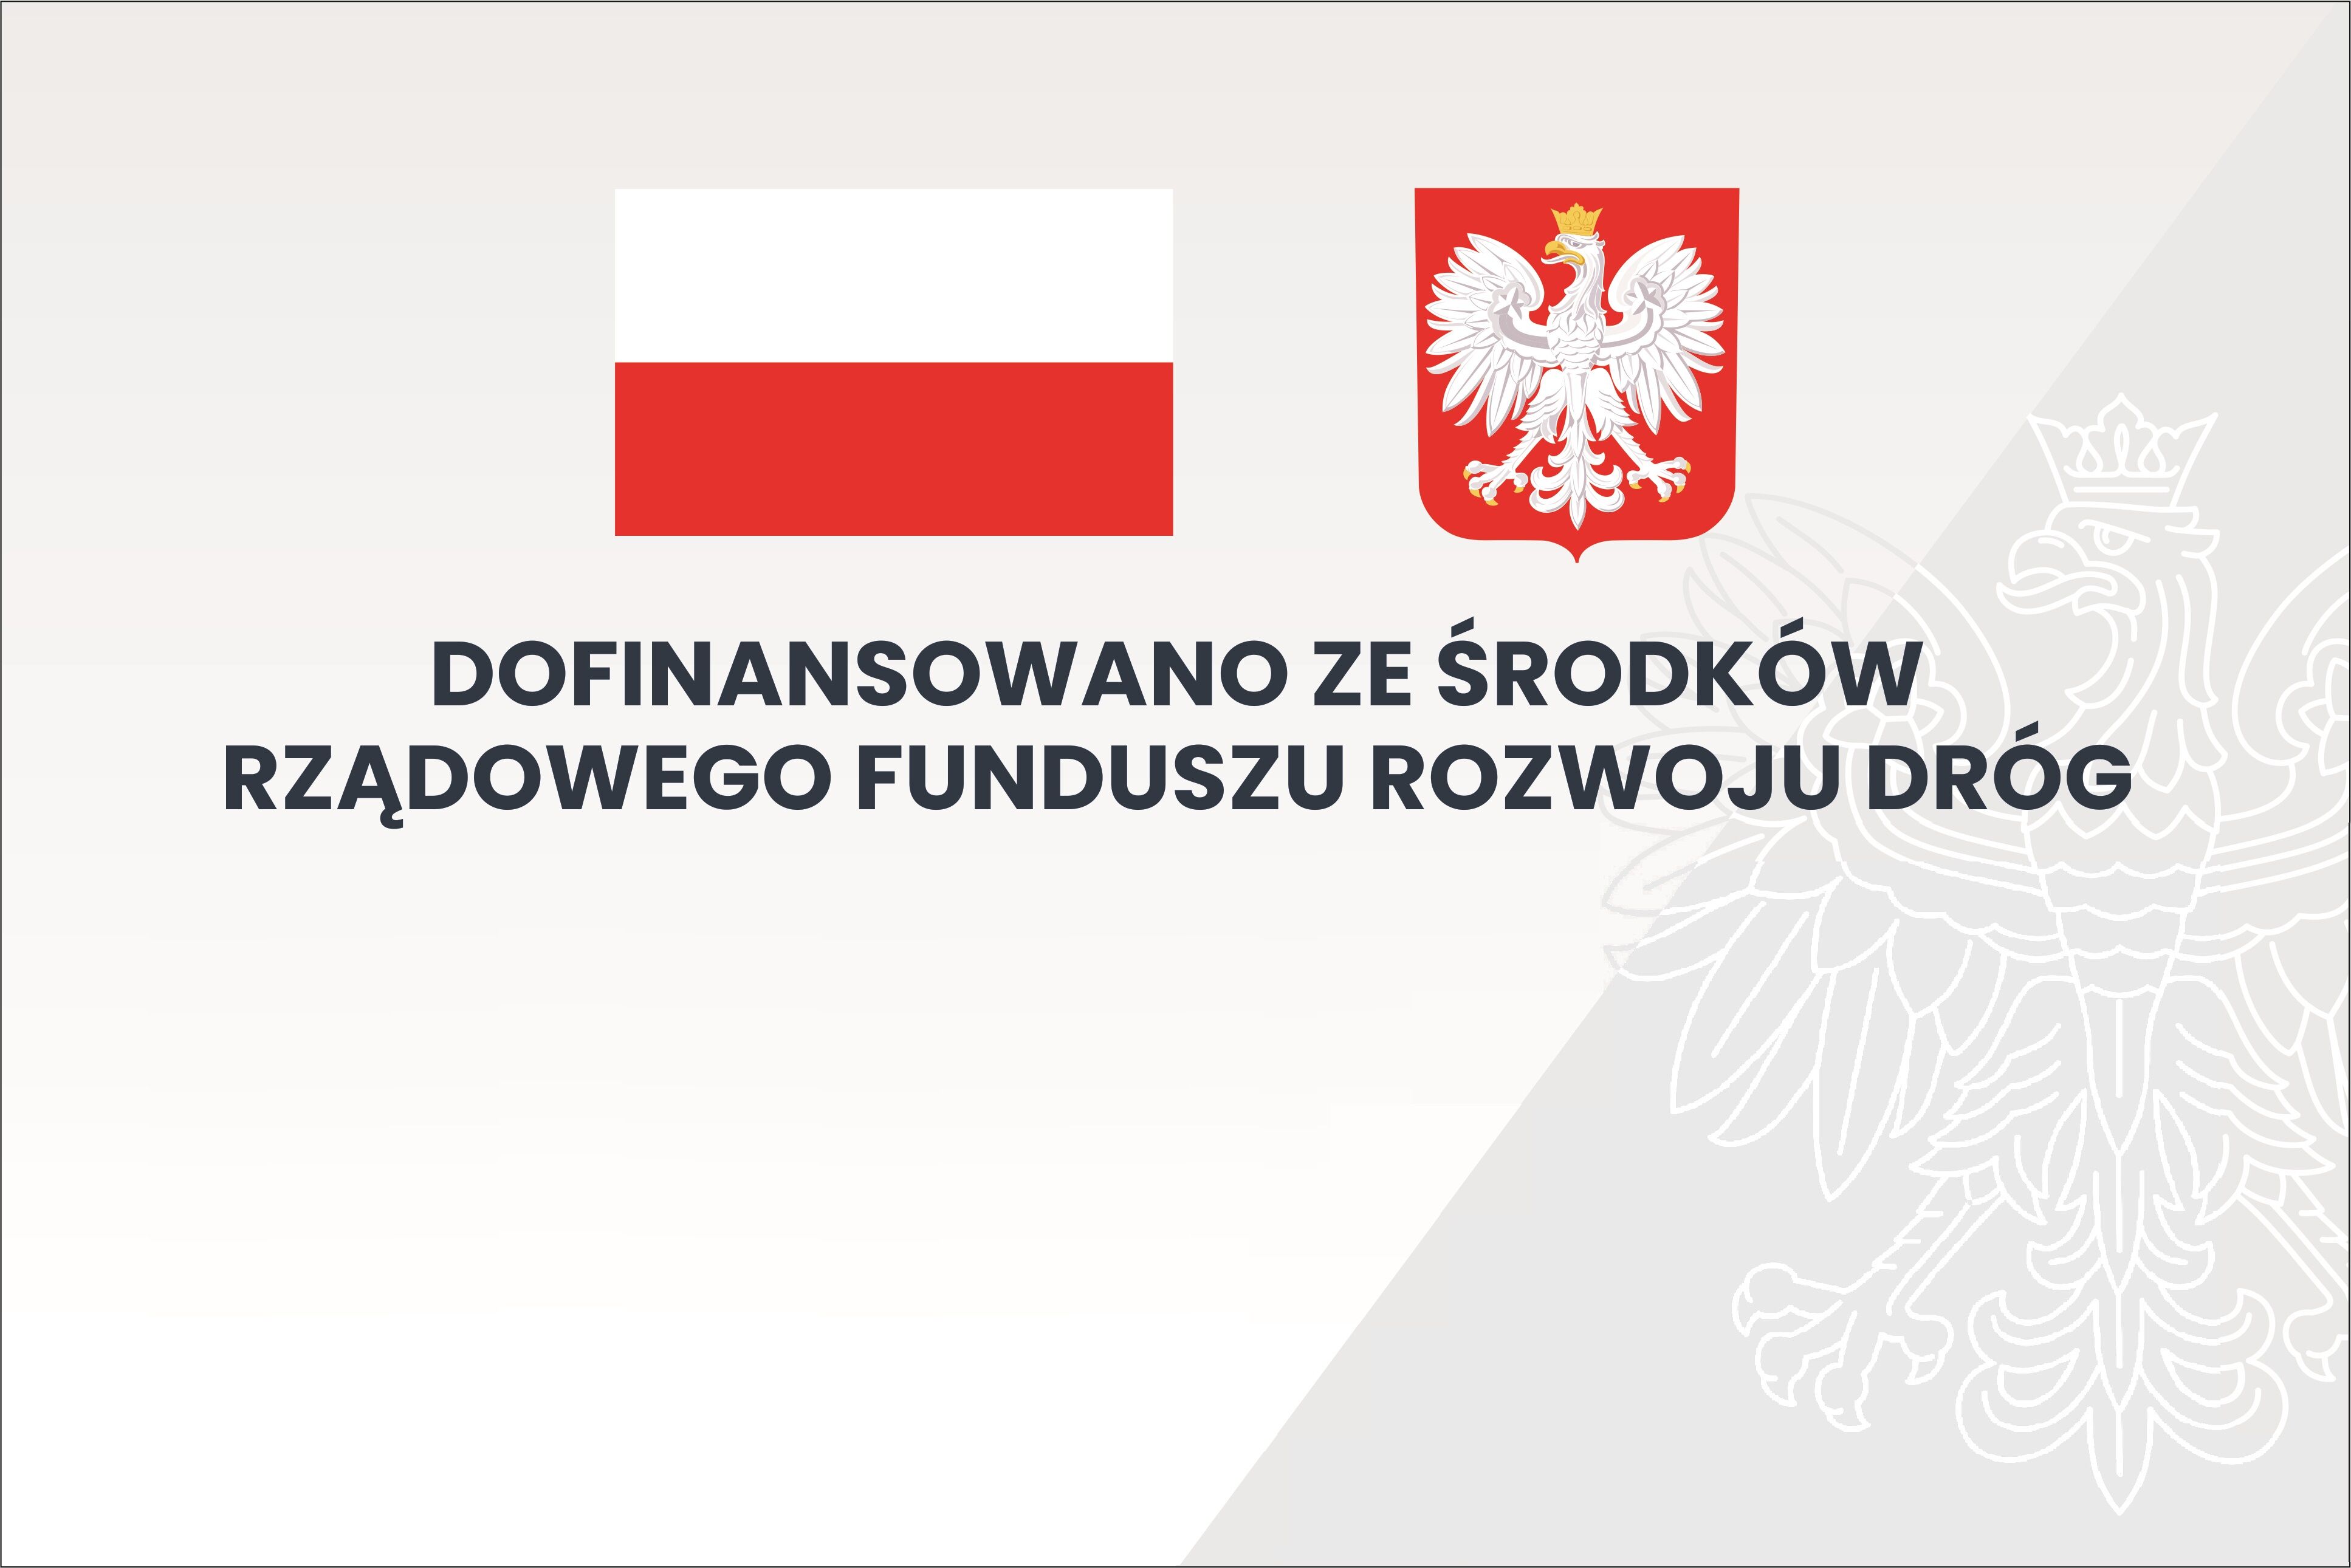 Zdjęcie przedstawia grafikę z polską flagą, herbem Polski i napisem "Dofinansowano ze środków Rządowego Funduszu Rozwoju Dróg" na szaro-białym tle.